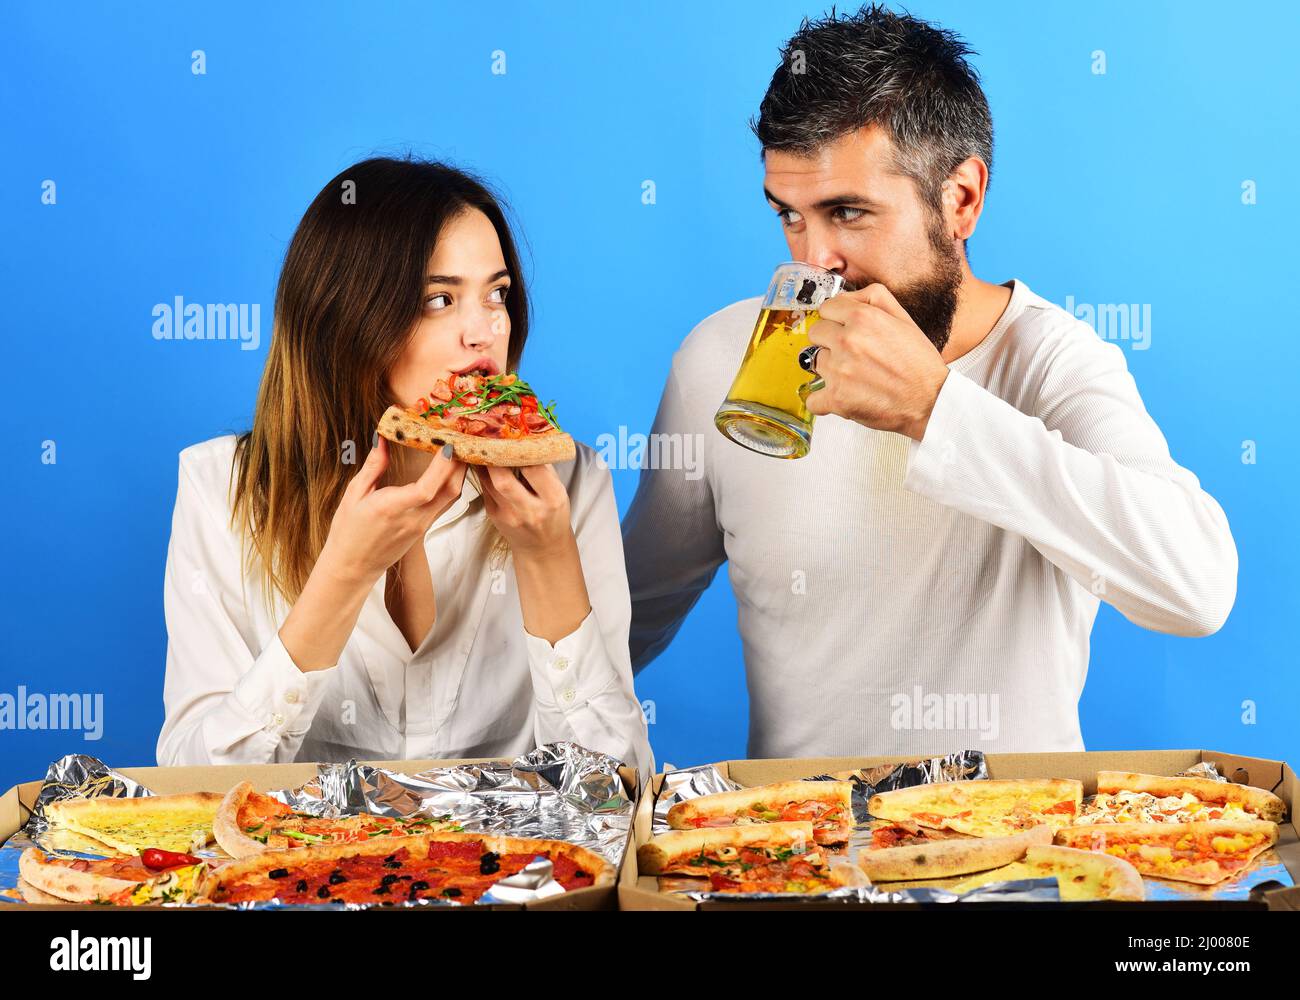 Coppia amorevole in abiti casual mangiare pizza. Uomo che beve birra, donna che mangia pizza a fette. Fast food. Foto Stock